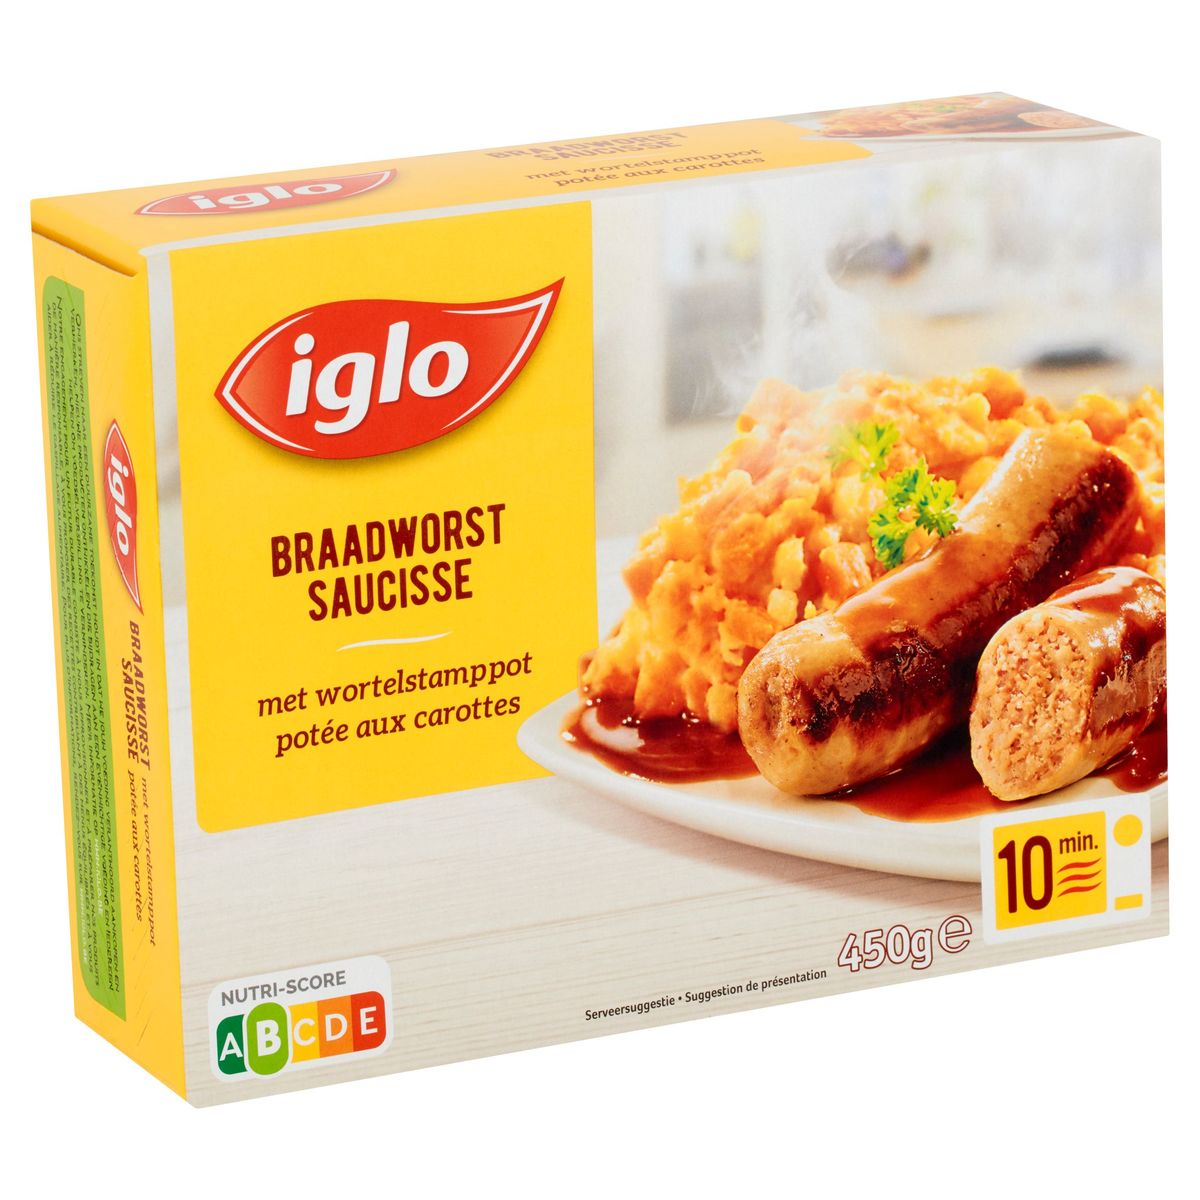 Iglo Braadworst met Wortelstamppot 1 portie 450 g